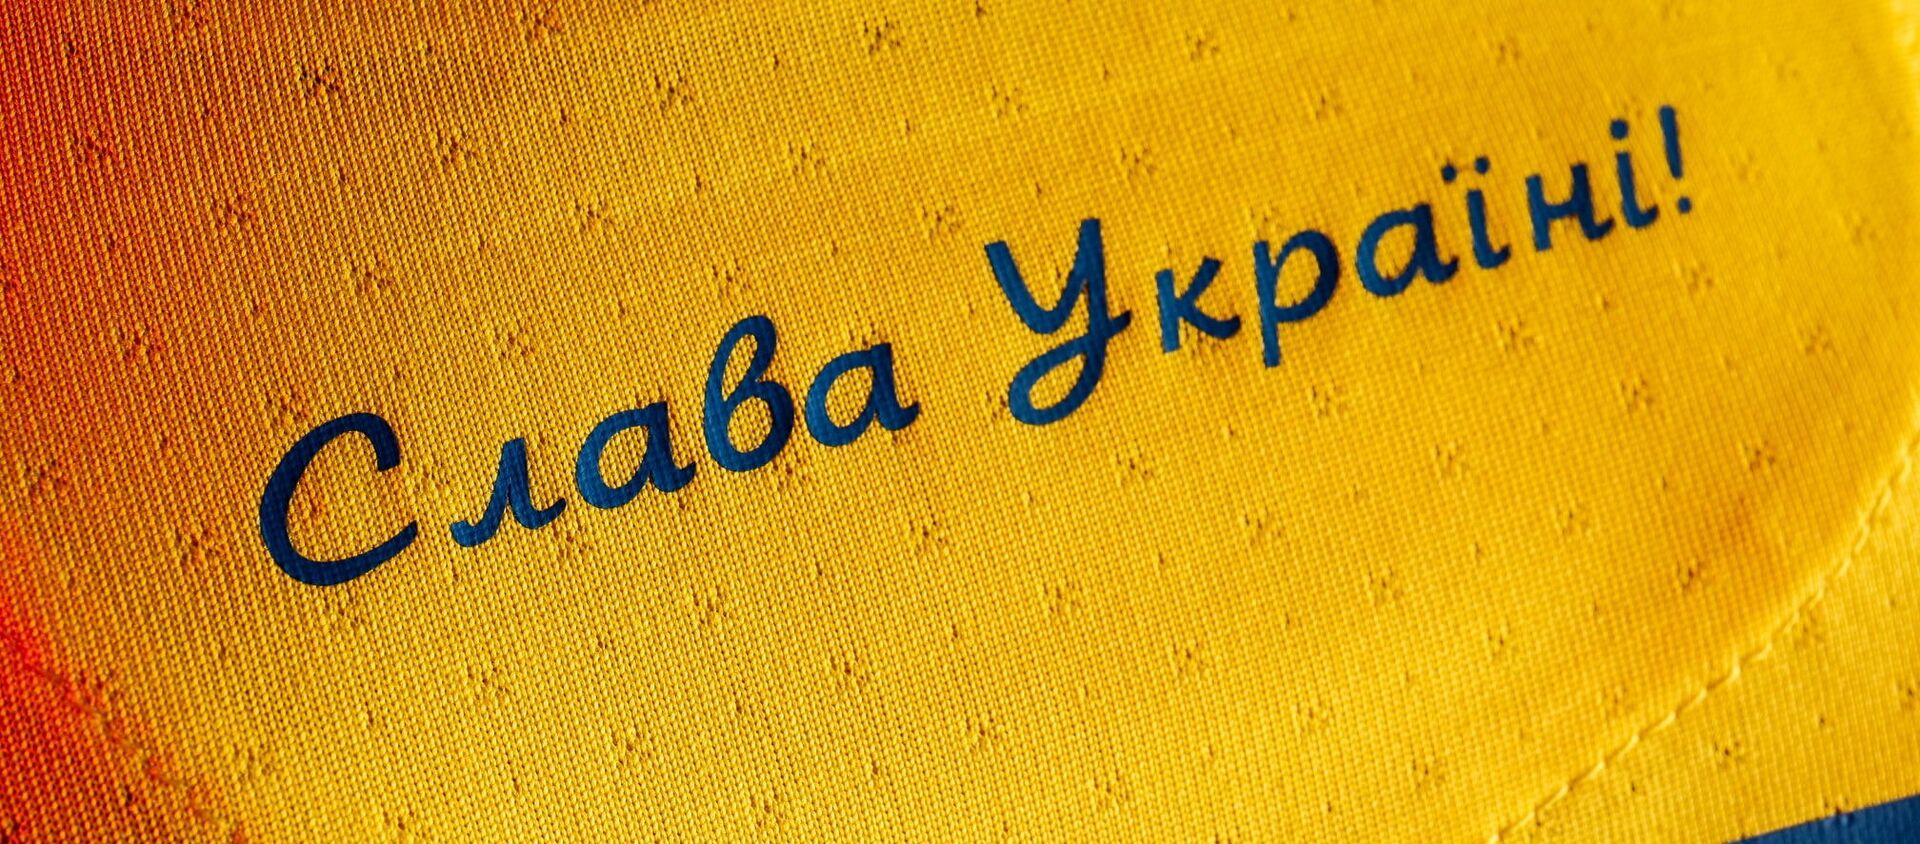  Đồng phục của đội tuyển Ukraina tại Giải vô địch bóng đá châu Âu EURO 2020 với dòng chữ “Vinh quang Ukraina!. - Sputnik Việt Nam, 1920, 09.06.2021